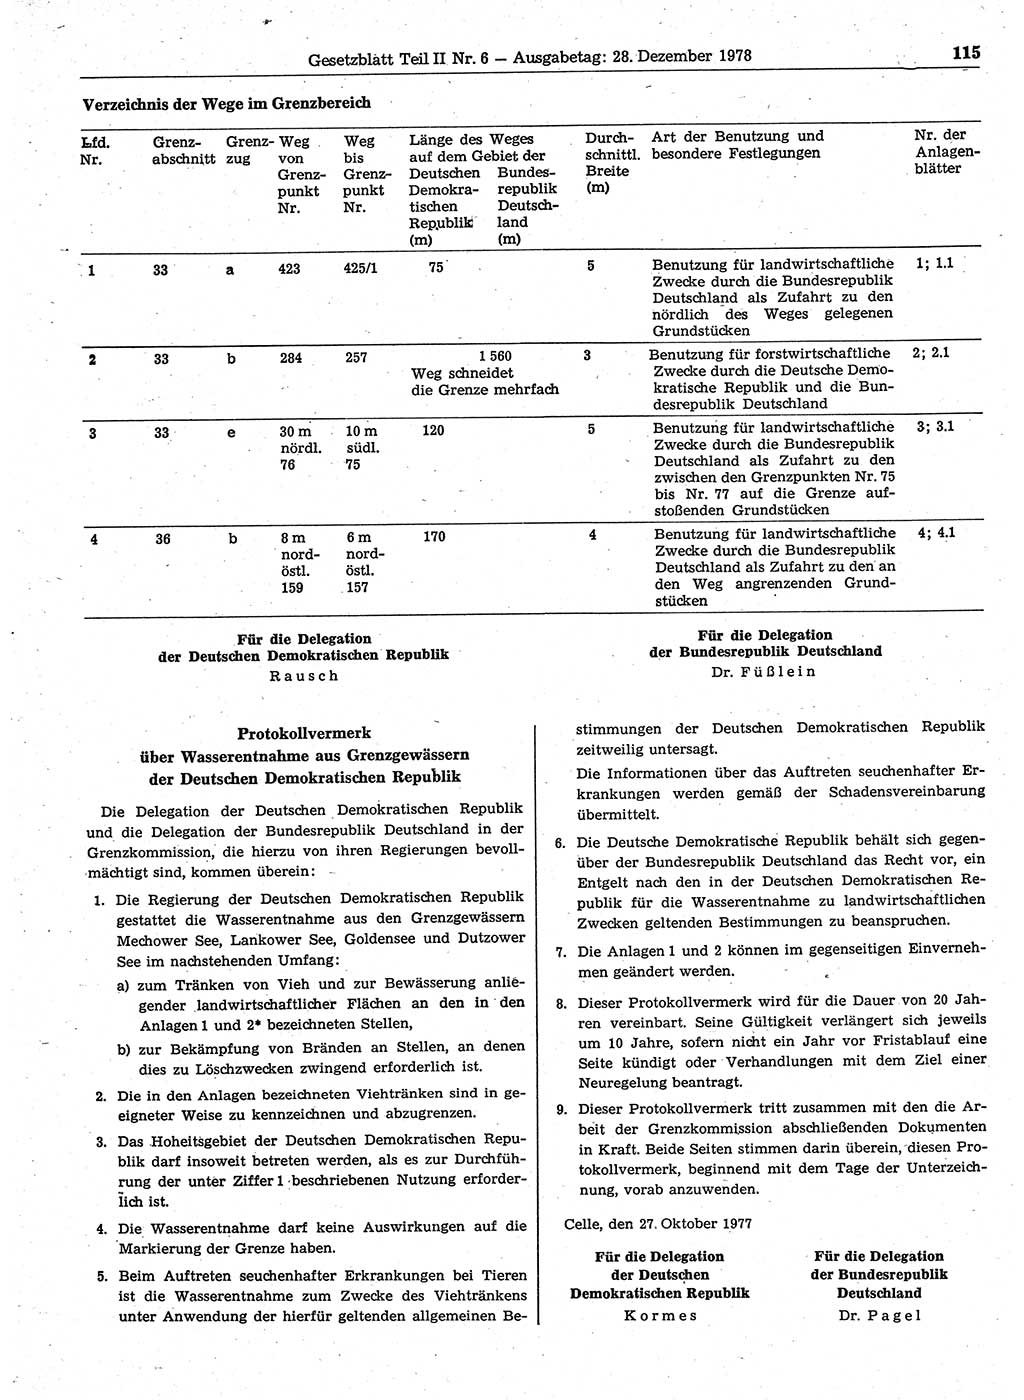 Gesetzblatt (GBl.) der Deutschen Demokratischen Republik (DDR) Teil ⅠⅠ 1978, Seite 115 (GBl. DDR ⅠⅠ 1978, S. 115)